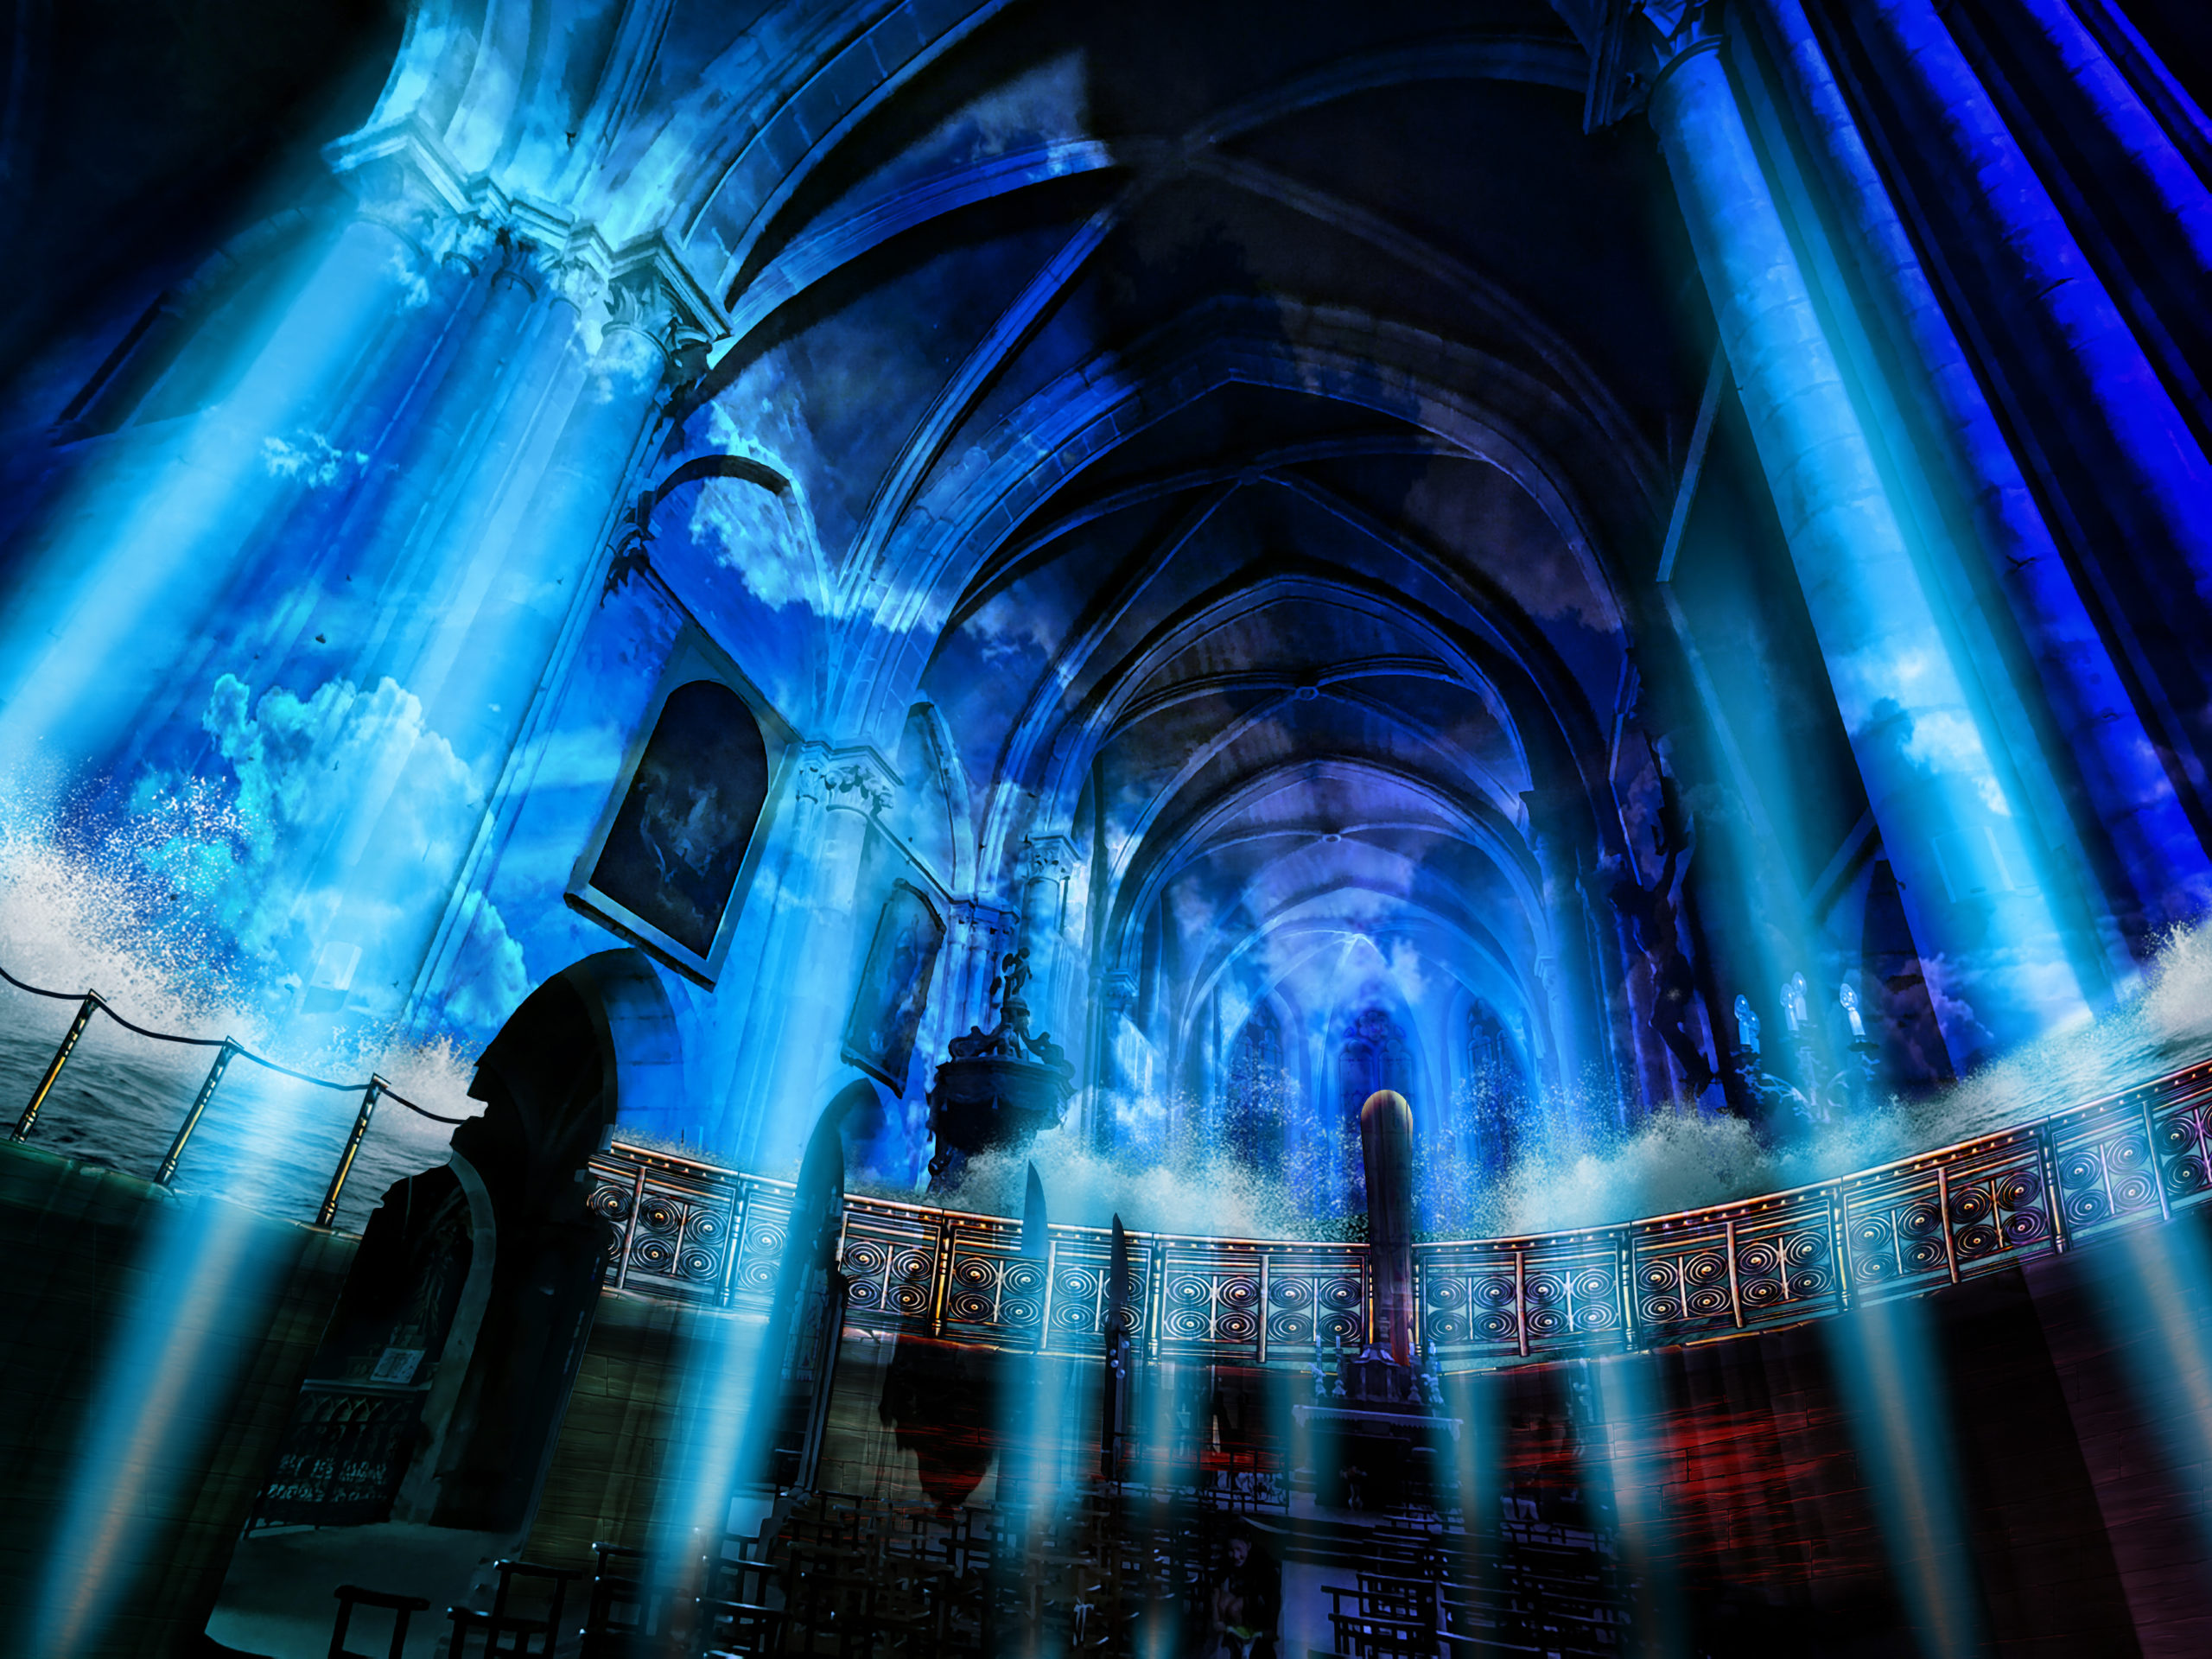 Son et lumière en dominante bleue, de Damien Fontaine au sein de l’église de Neufchâteau.